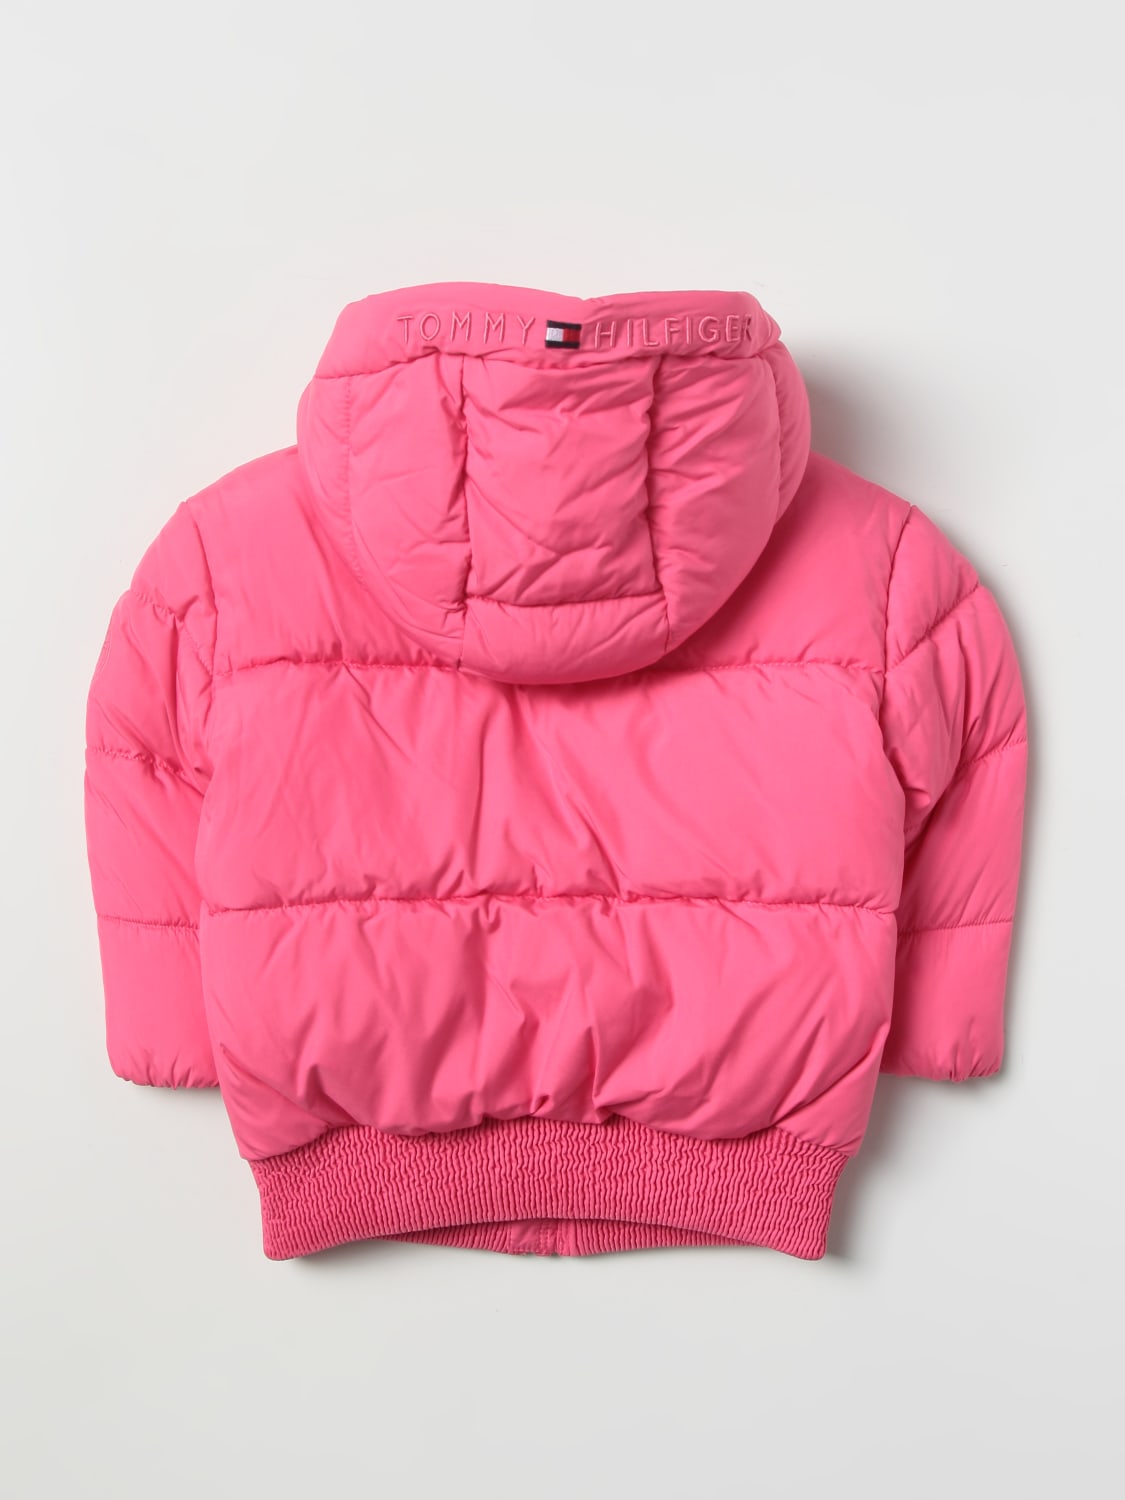 Tommy Hilfiger Outlet: down jacket with hood - Pink | Hilfiger jacket KG0KG06689 online on GIGLIO.COM